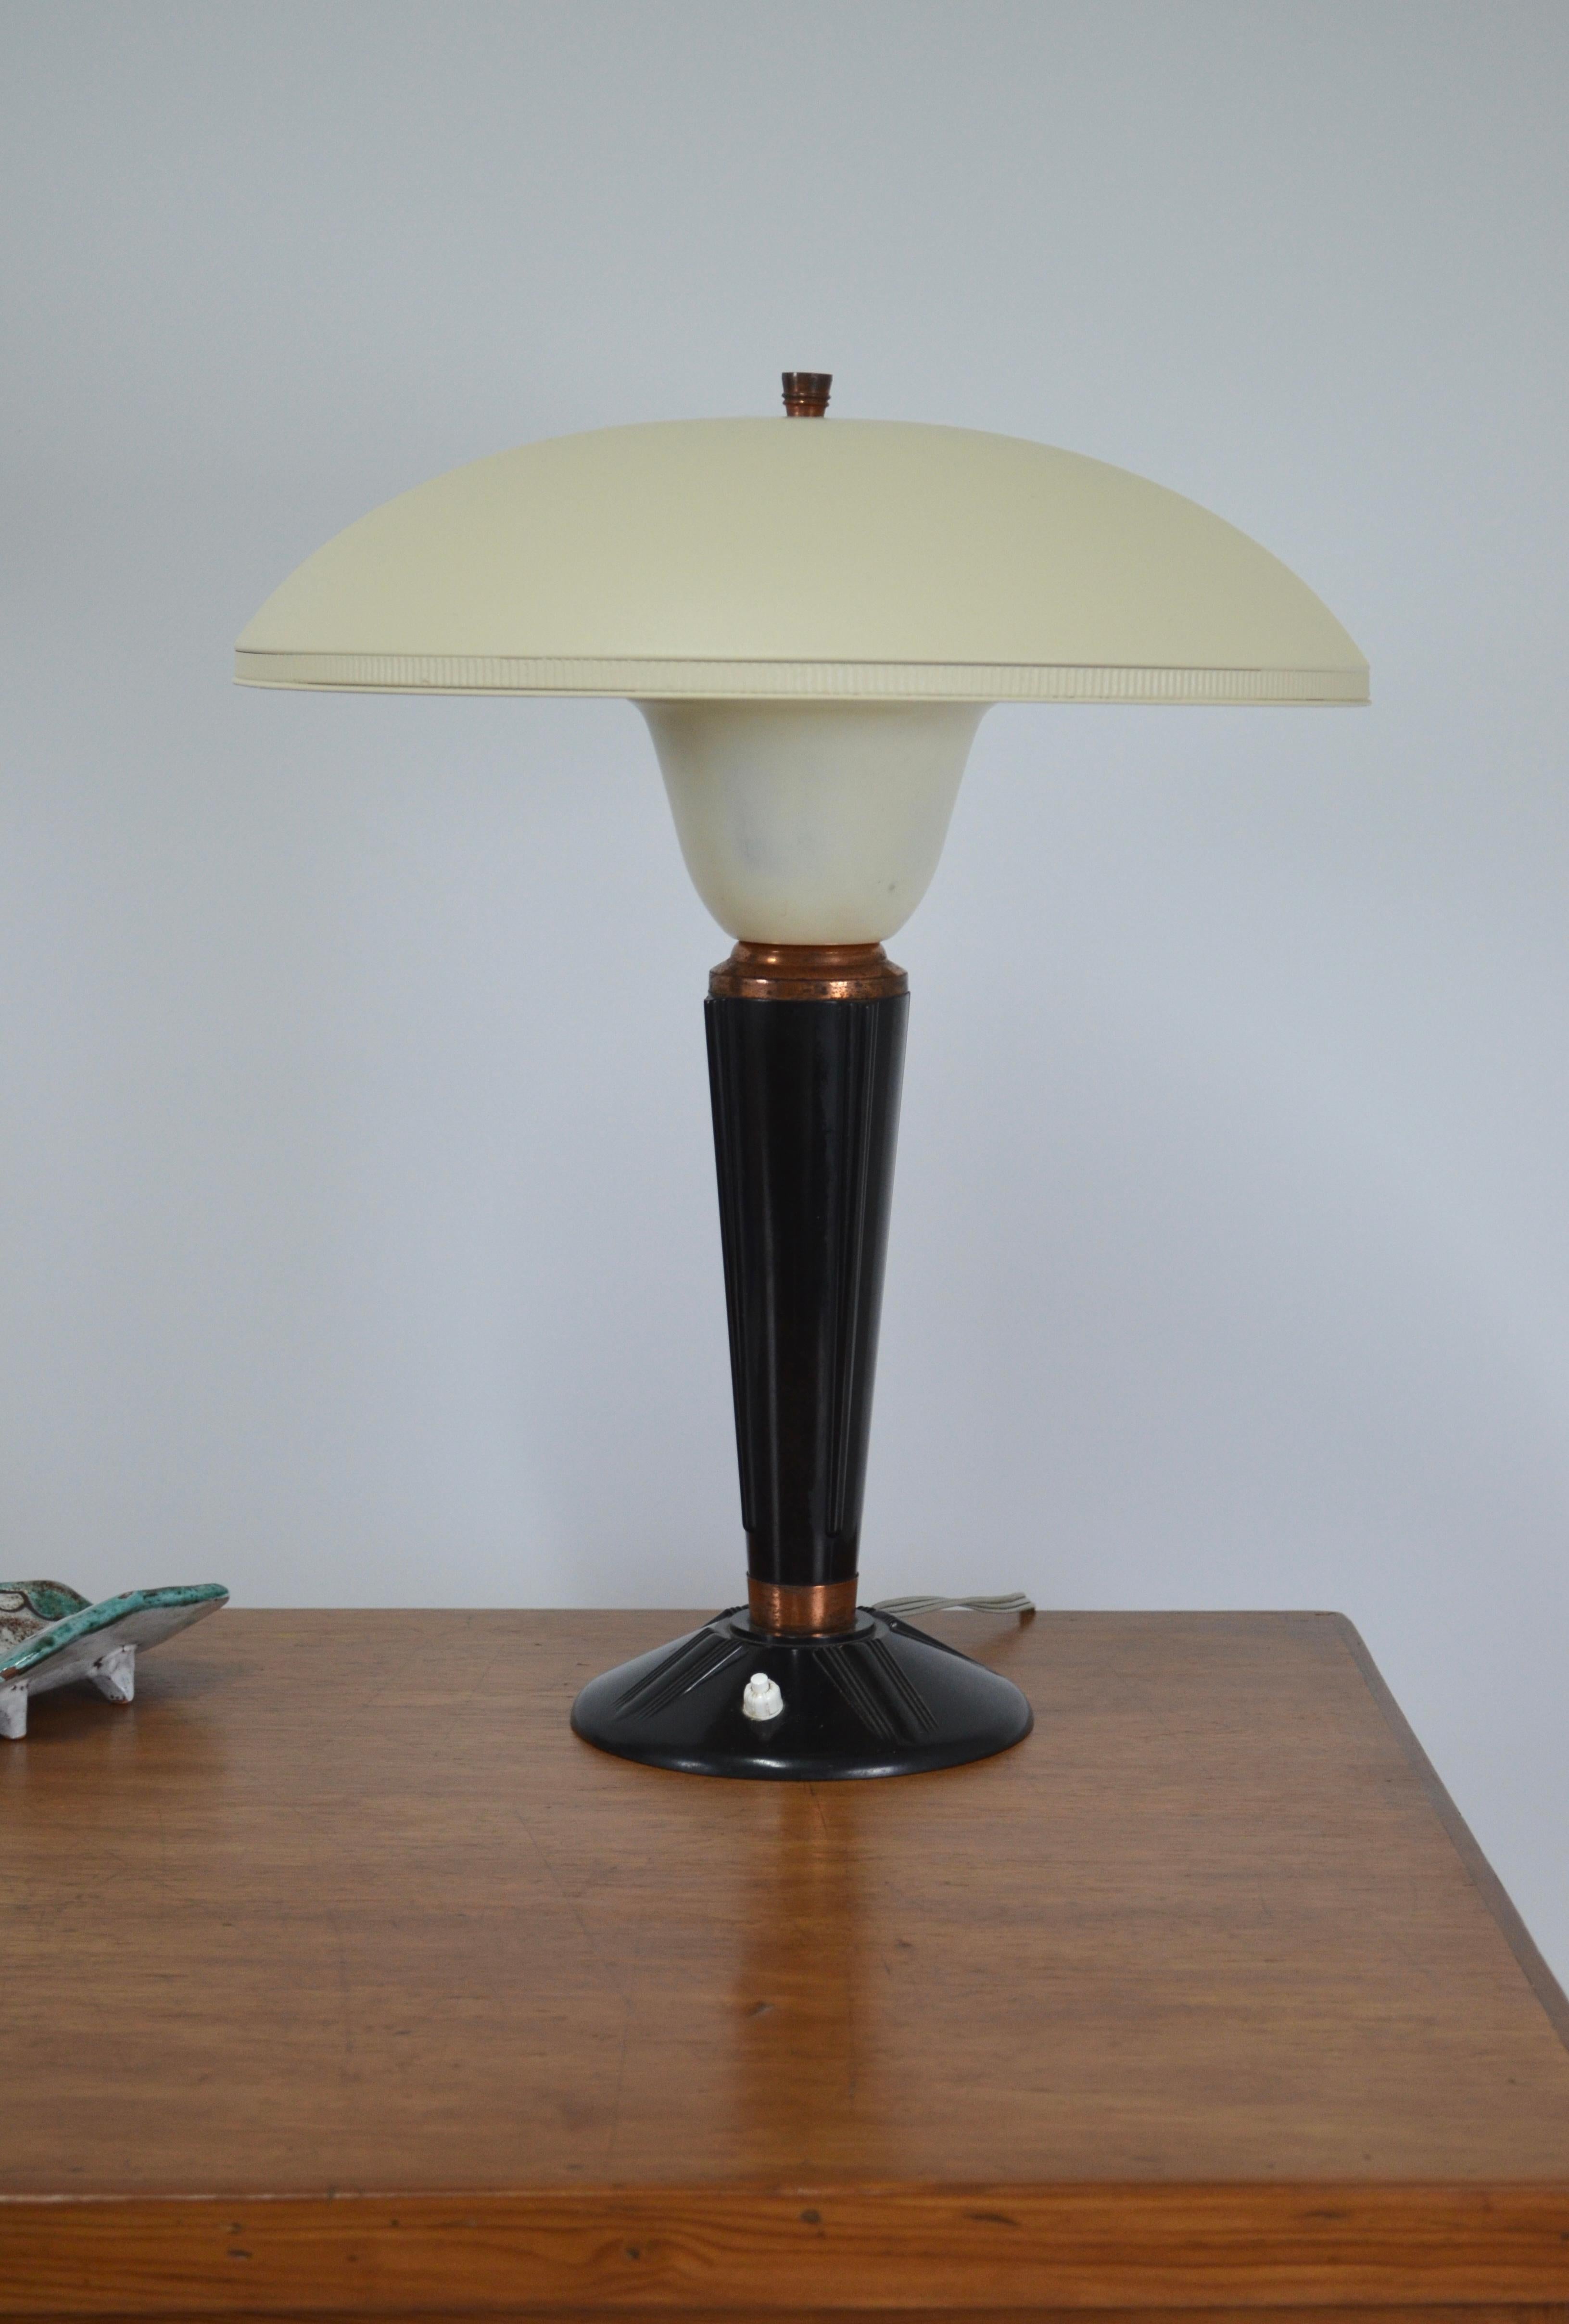 Lampe Modell 320 von Jumo, Frankreich, 1940er Jahre
Sein Gehäuse besteht aus Bakelit (Vorläufer des Kunststoffs) mit Kupferringen.
Der Reflektor ist aus elfenbeinfarbenem Metall. Die Farbe scheint nicht original zu sein.
Schöne Proportionen